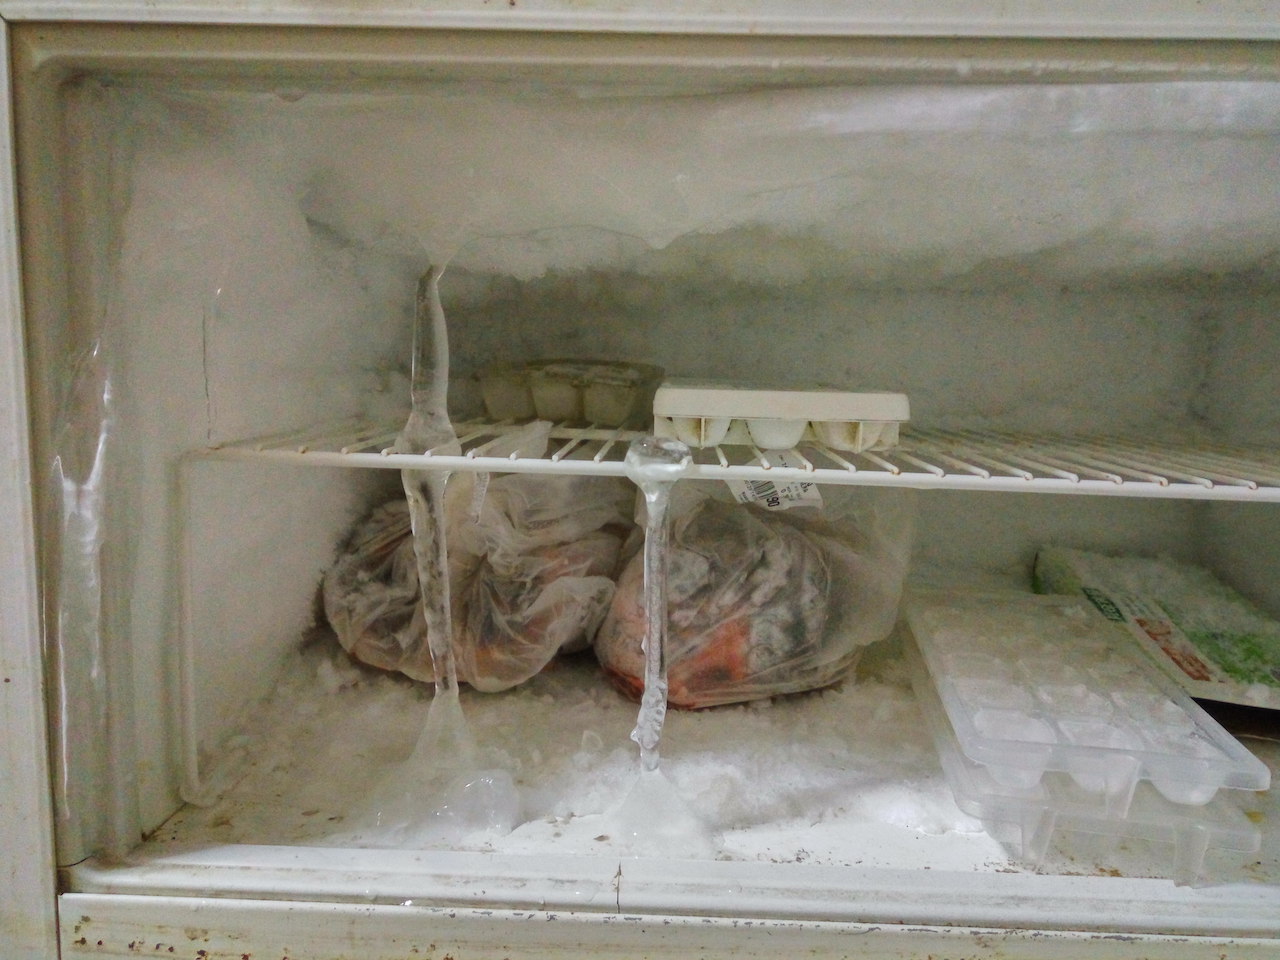 Freezer congelato